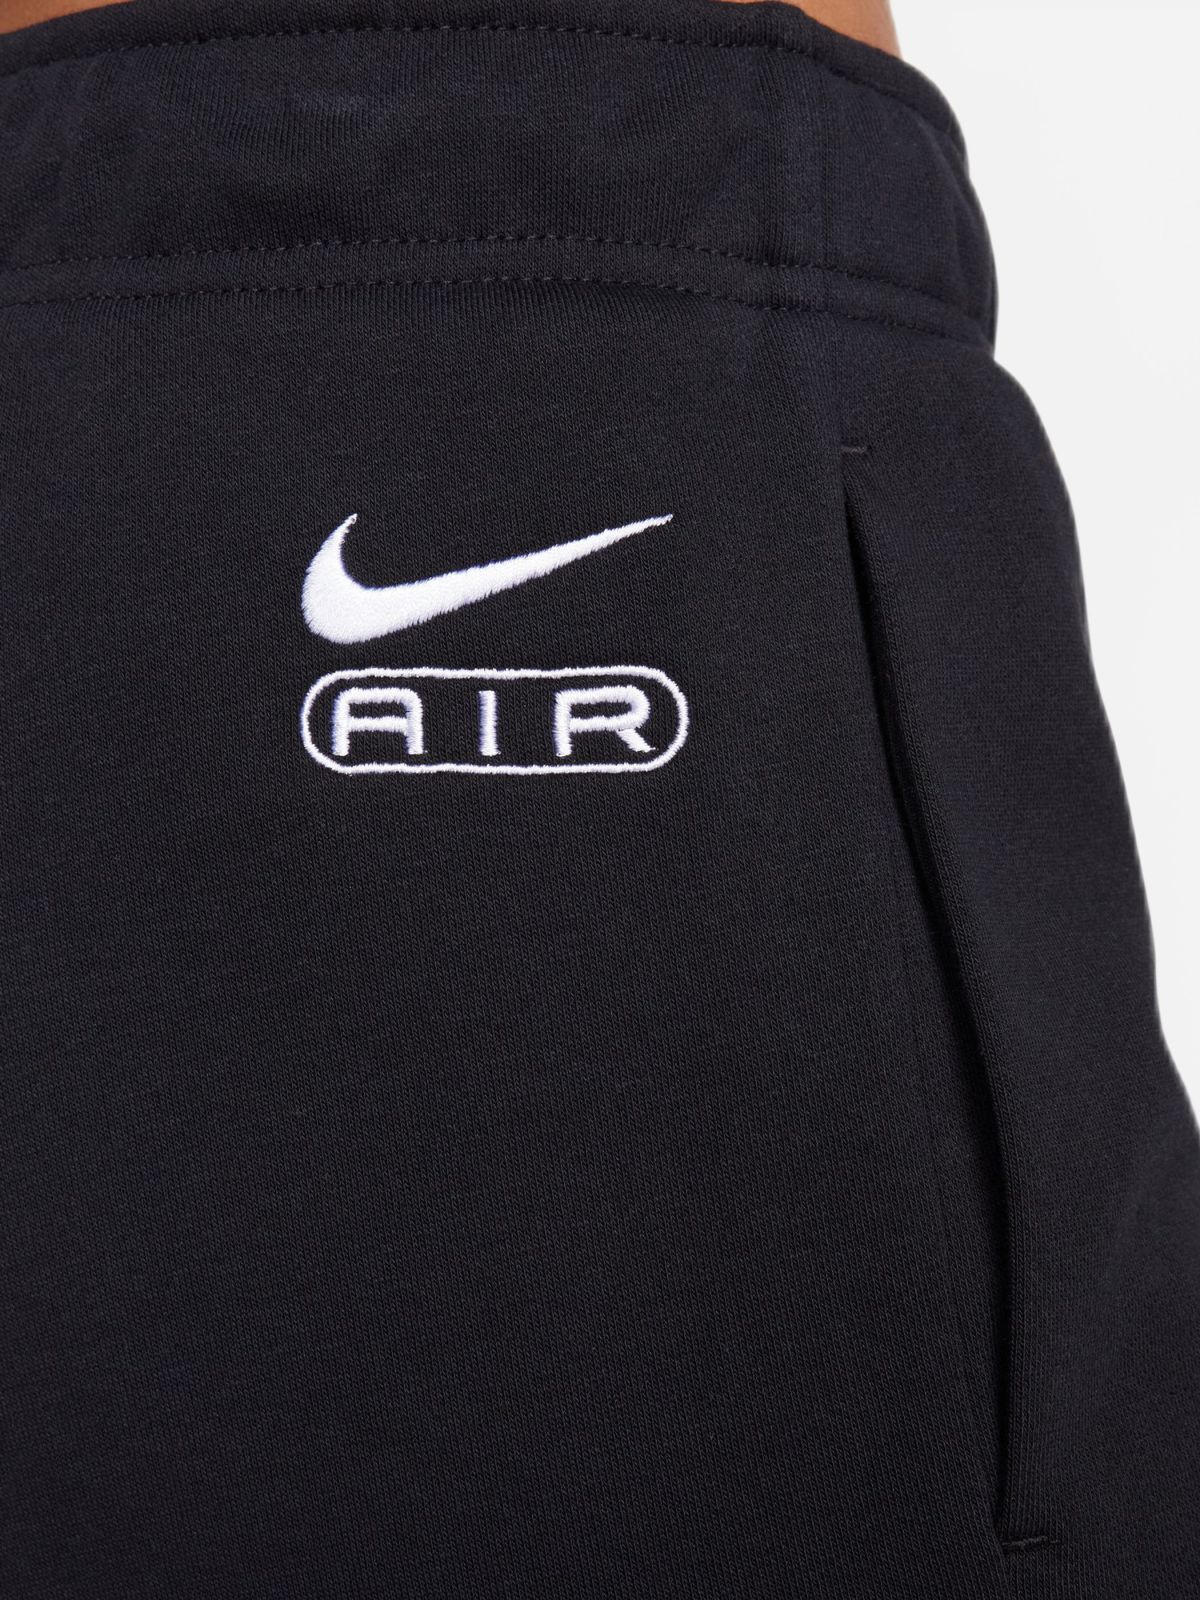  מכנסיים ארוכים Nike Air של NIKE